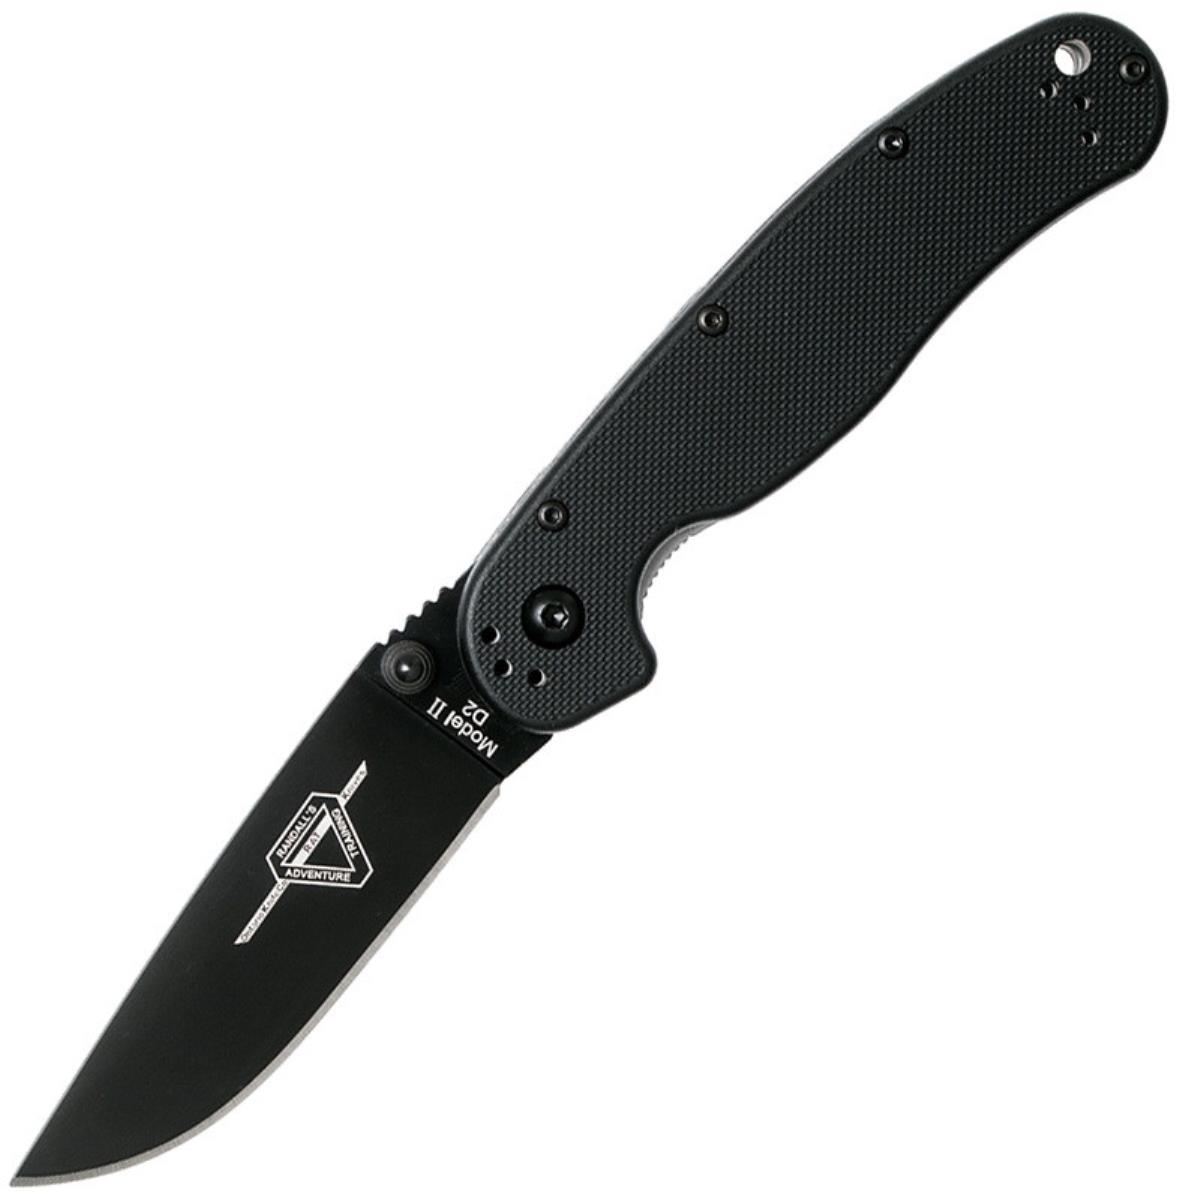 Нож RAT II складн.,чёрная нейлоновая рукоять, клинок AUS8 чёрное покрытие (8861)  ONTARIO нож rat ii складн чёрная нейлоновая рукоять клинок aus8 чёрное покрытие 8861 ontario